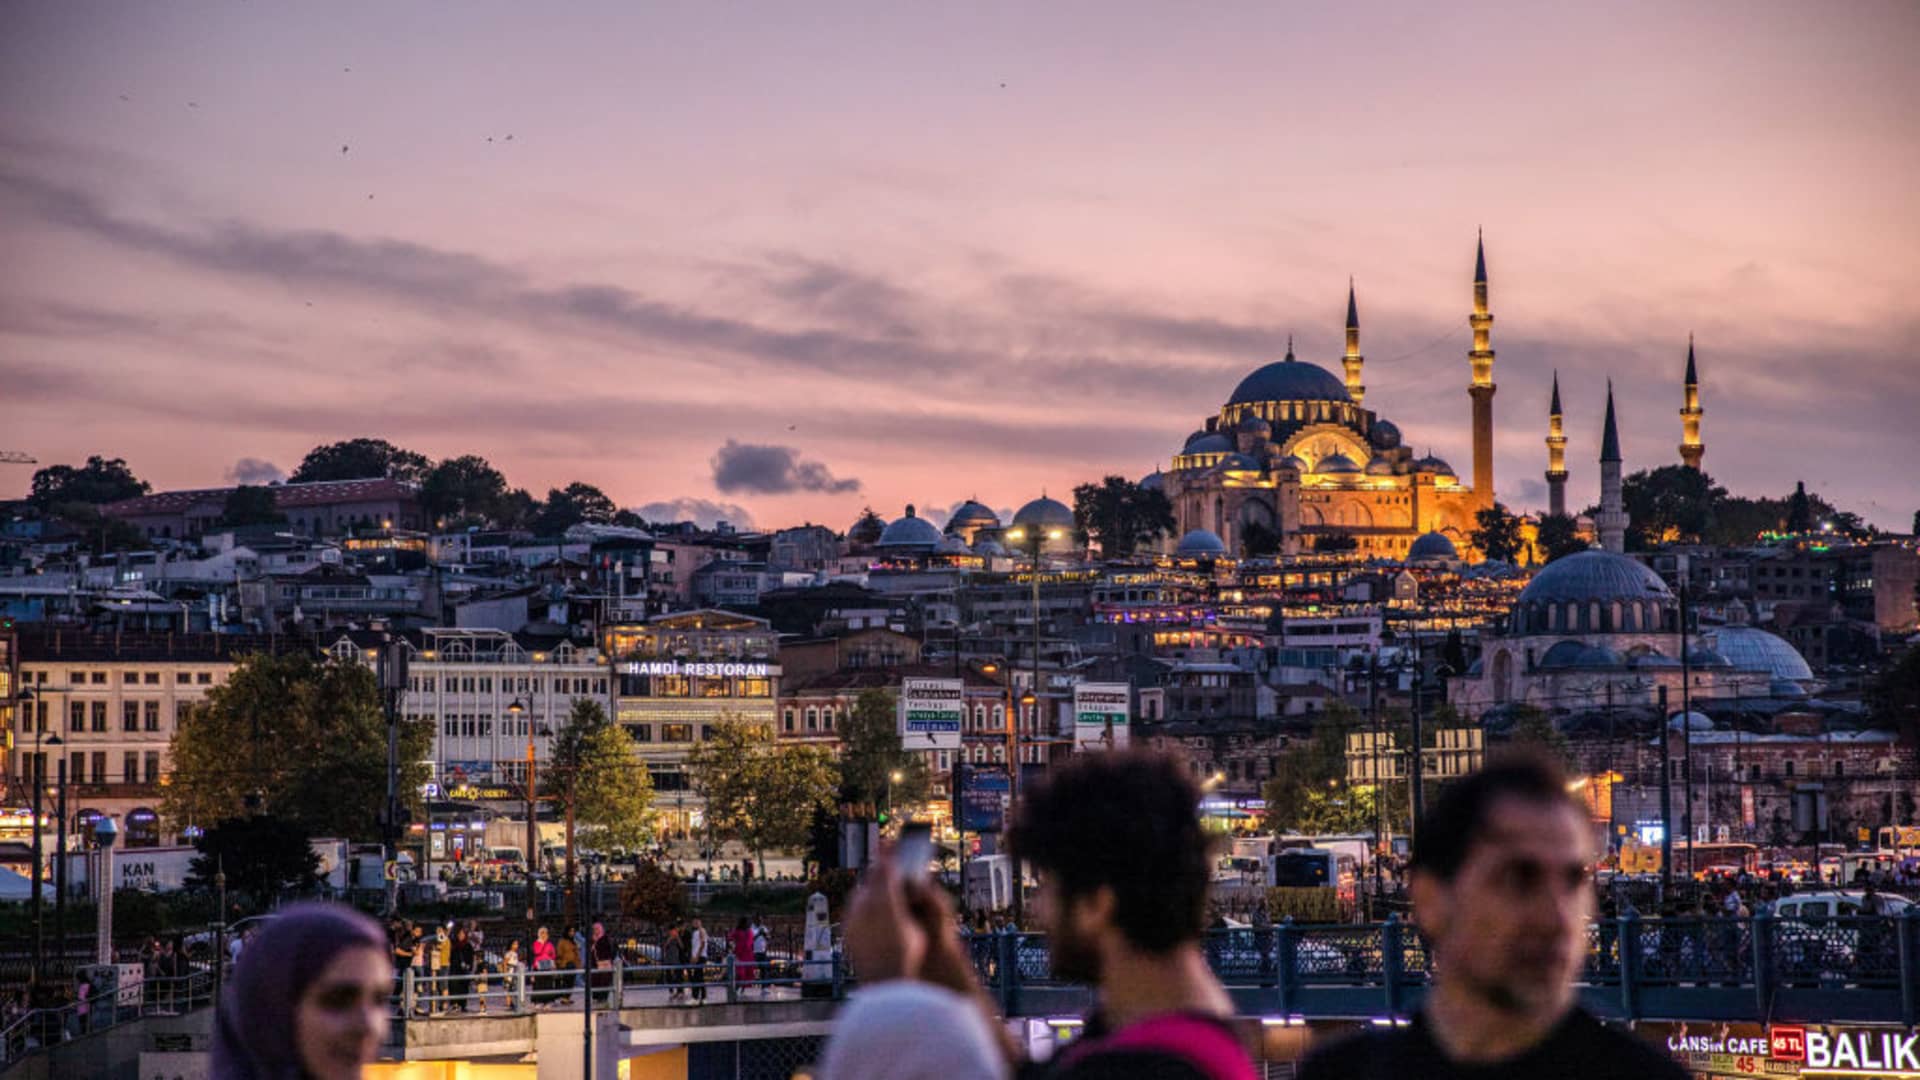 तुर्की की मुद्रास्फीति 85% से ऊपर है क्योंकि एर्दोगन ने ब्याज दरों में बढ़ोतरी को जारी रखा है